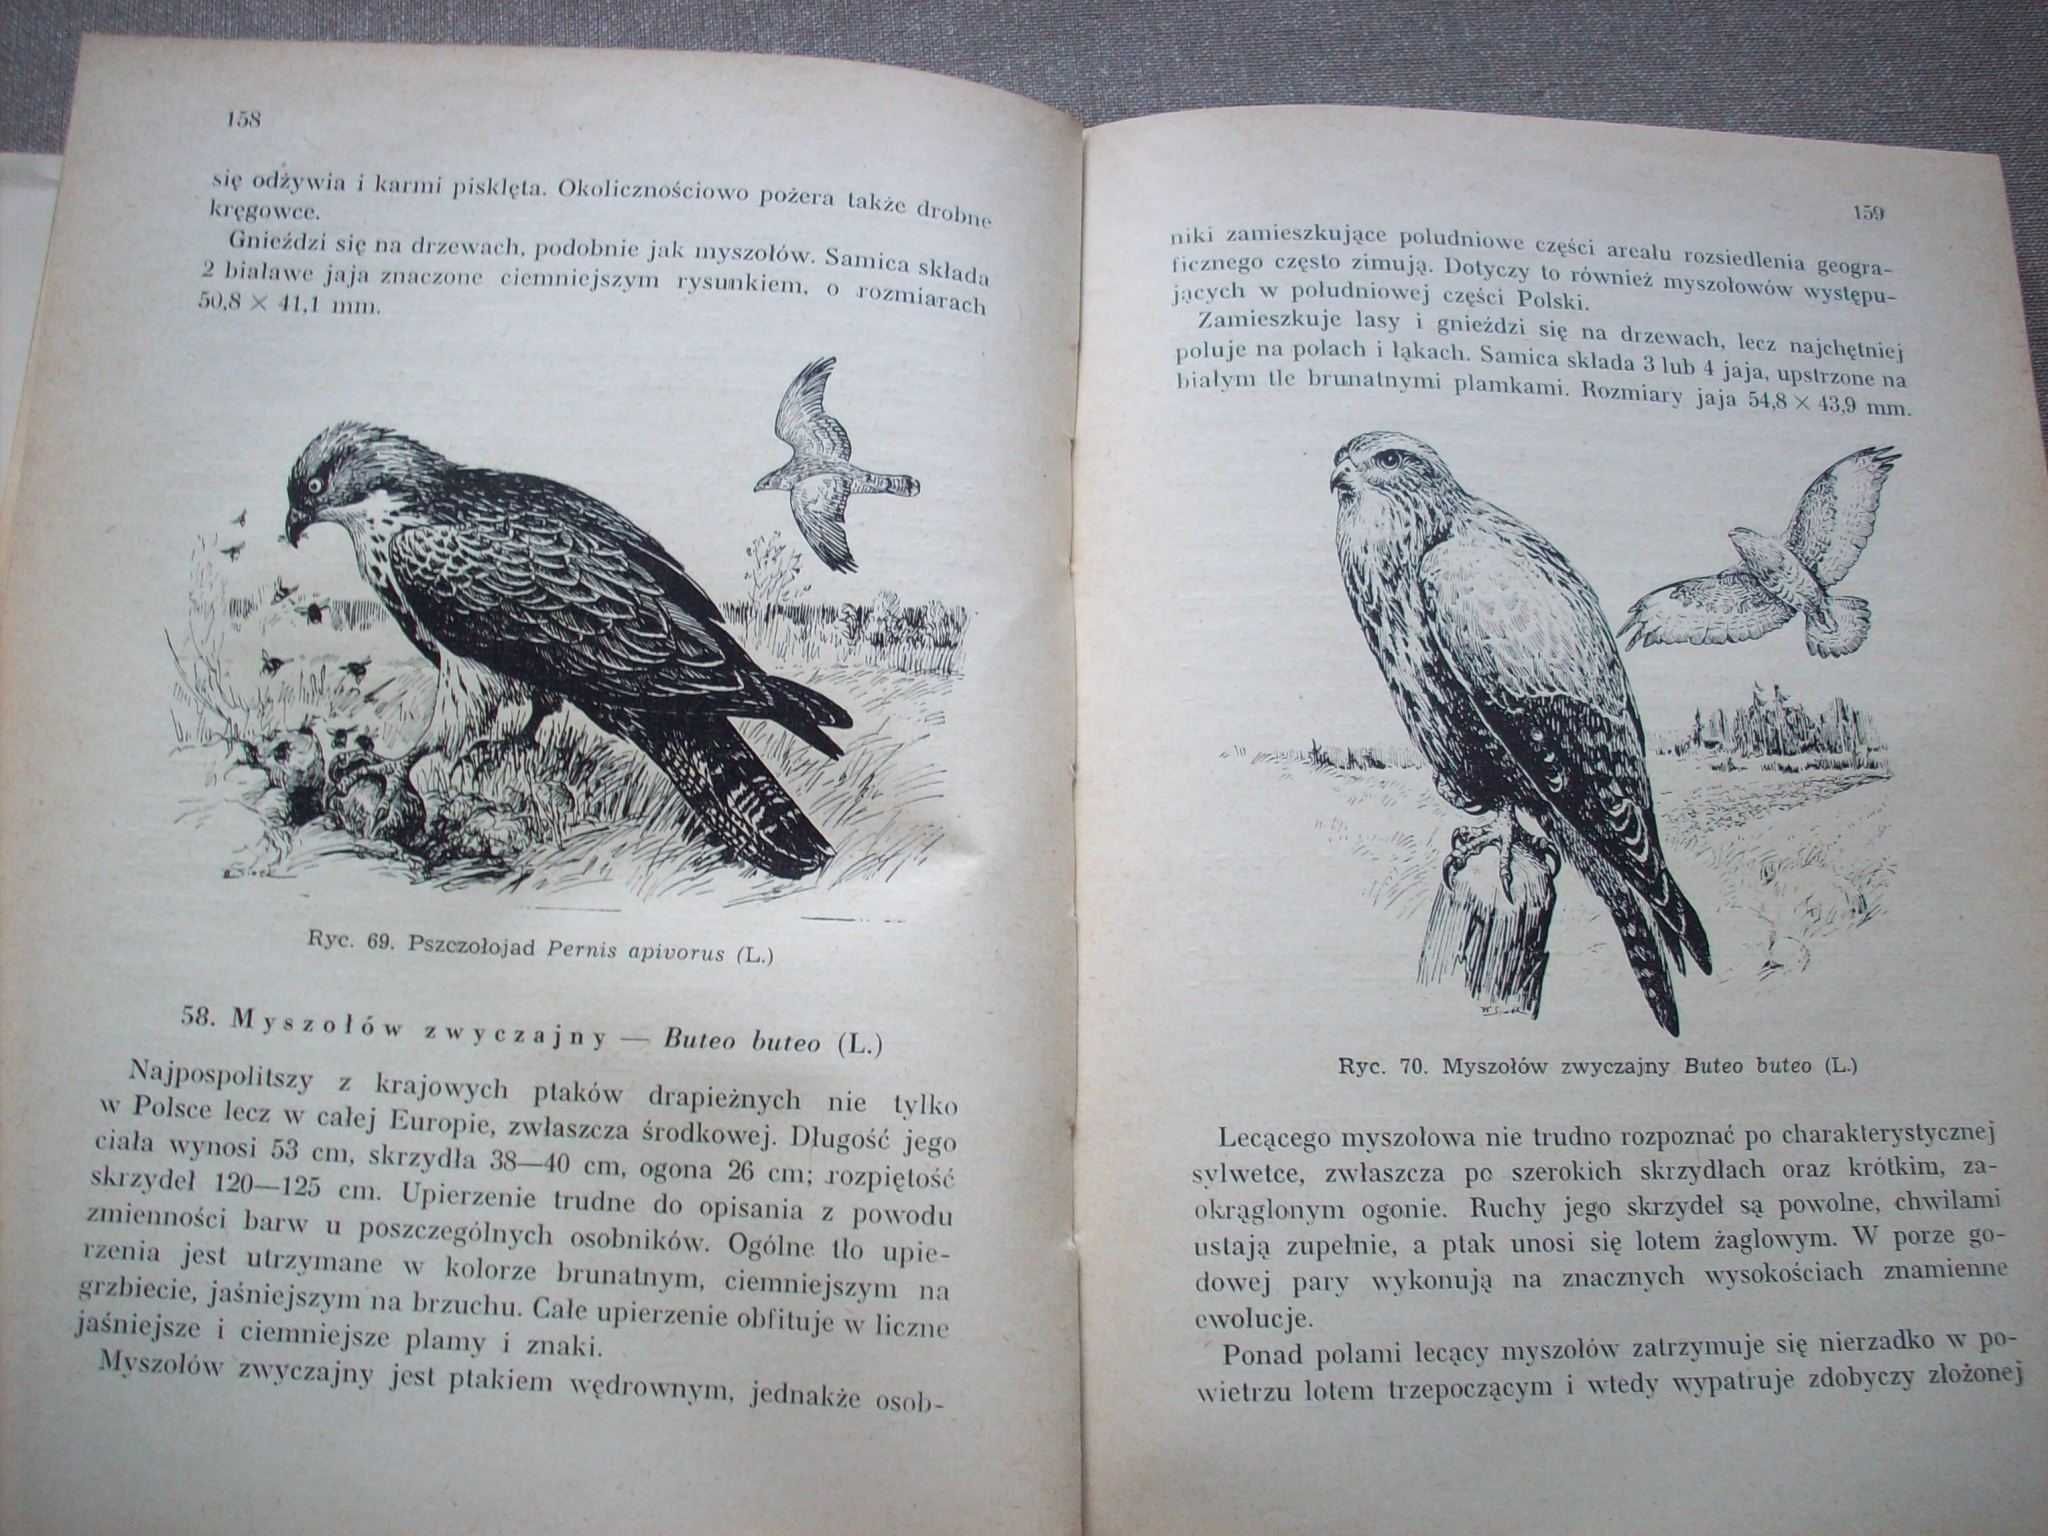 Ochrona gatunkowa zwierząt w Polsce, B. Ferens, 1957.